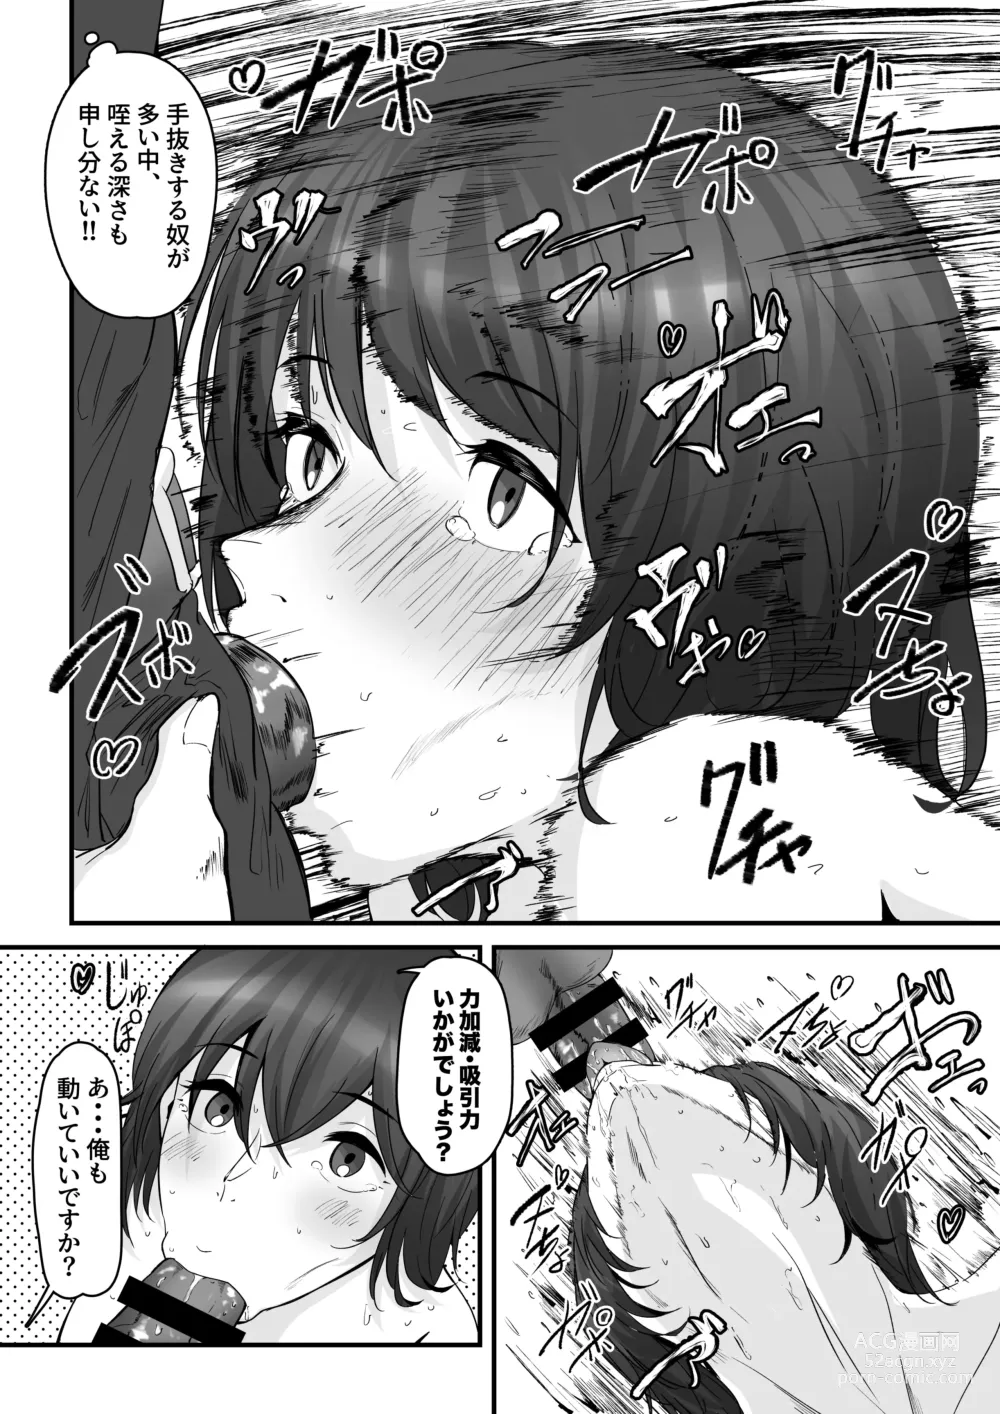 Page 7 of doujinshi Danseiyou Toile wa Itsumo Kondeiru.